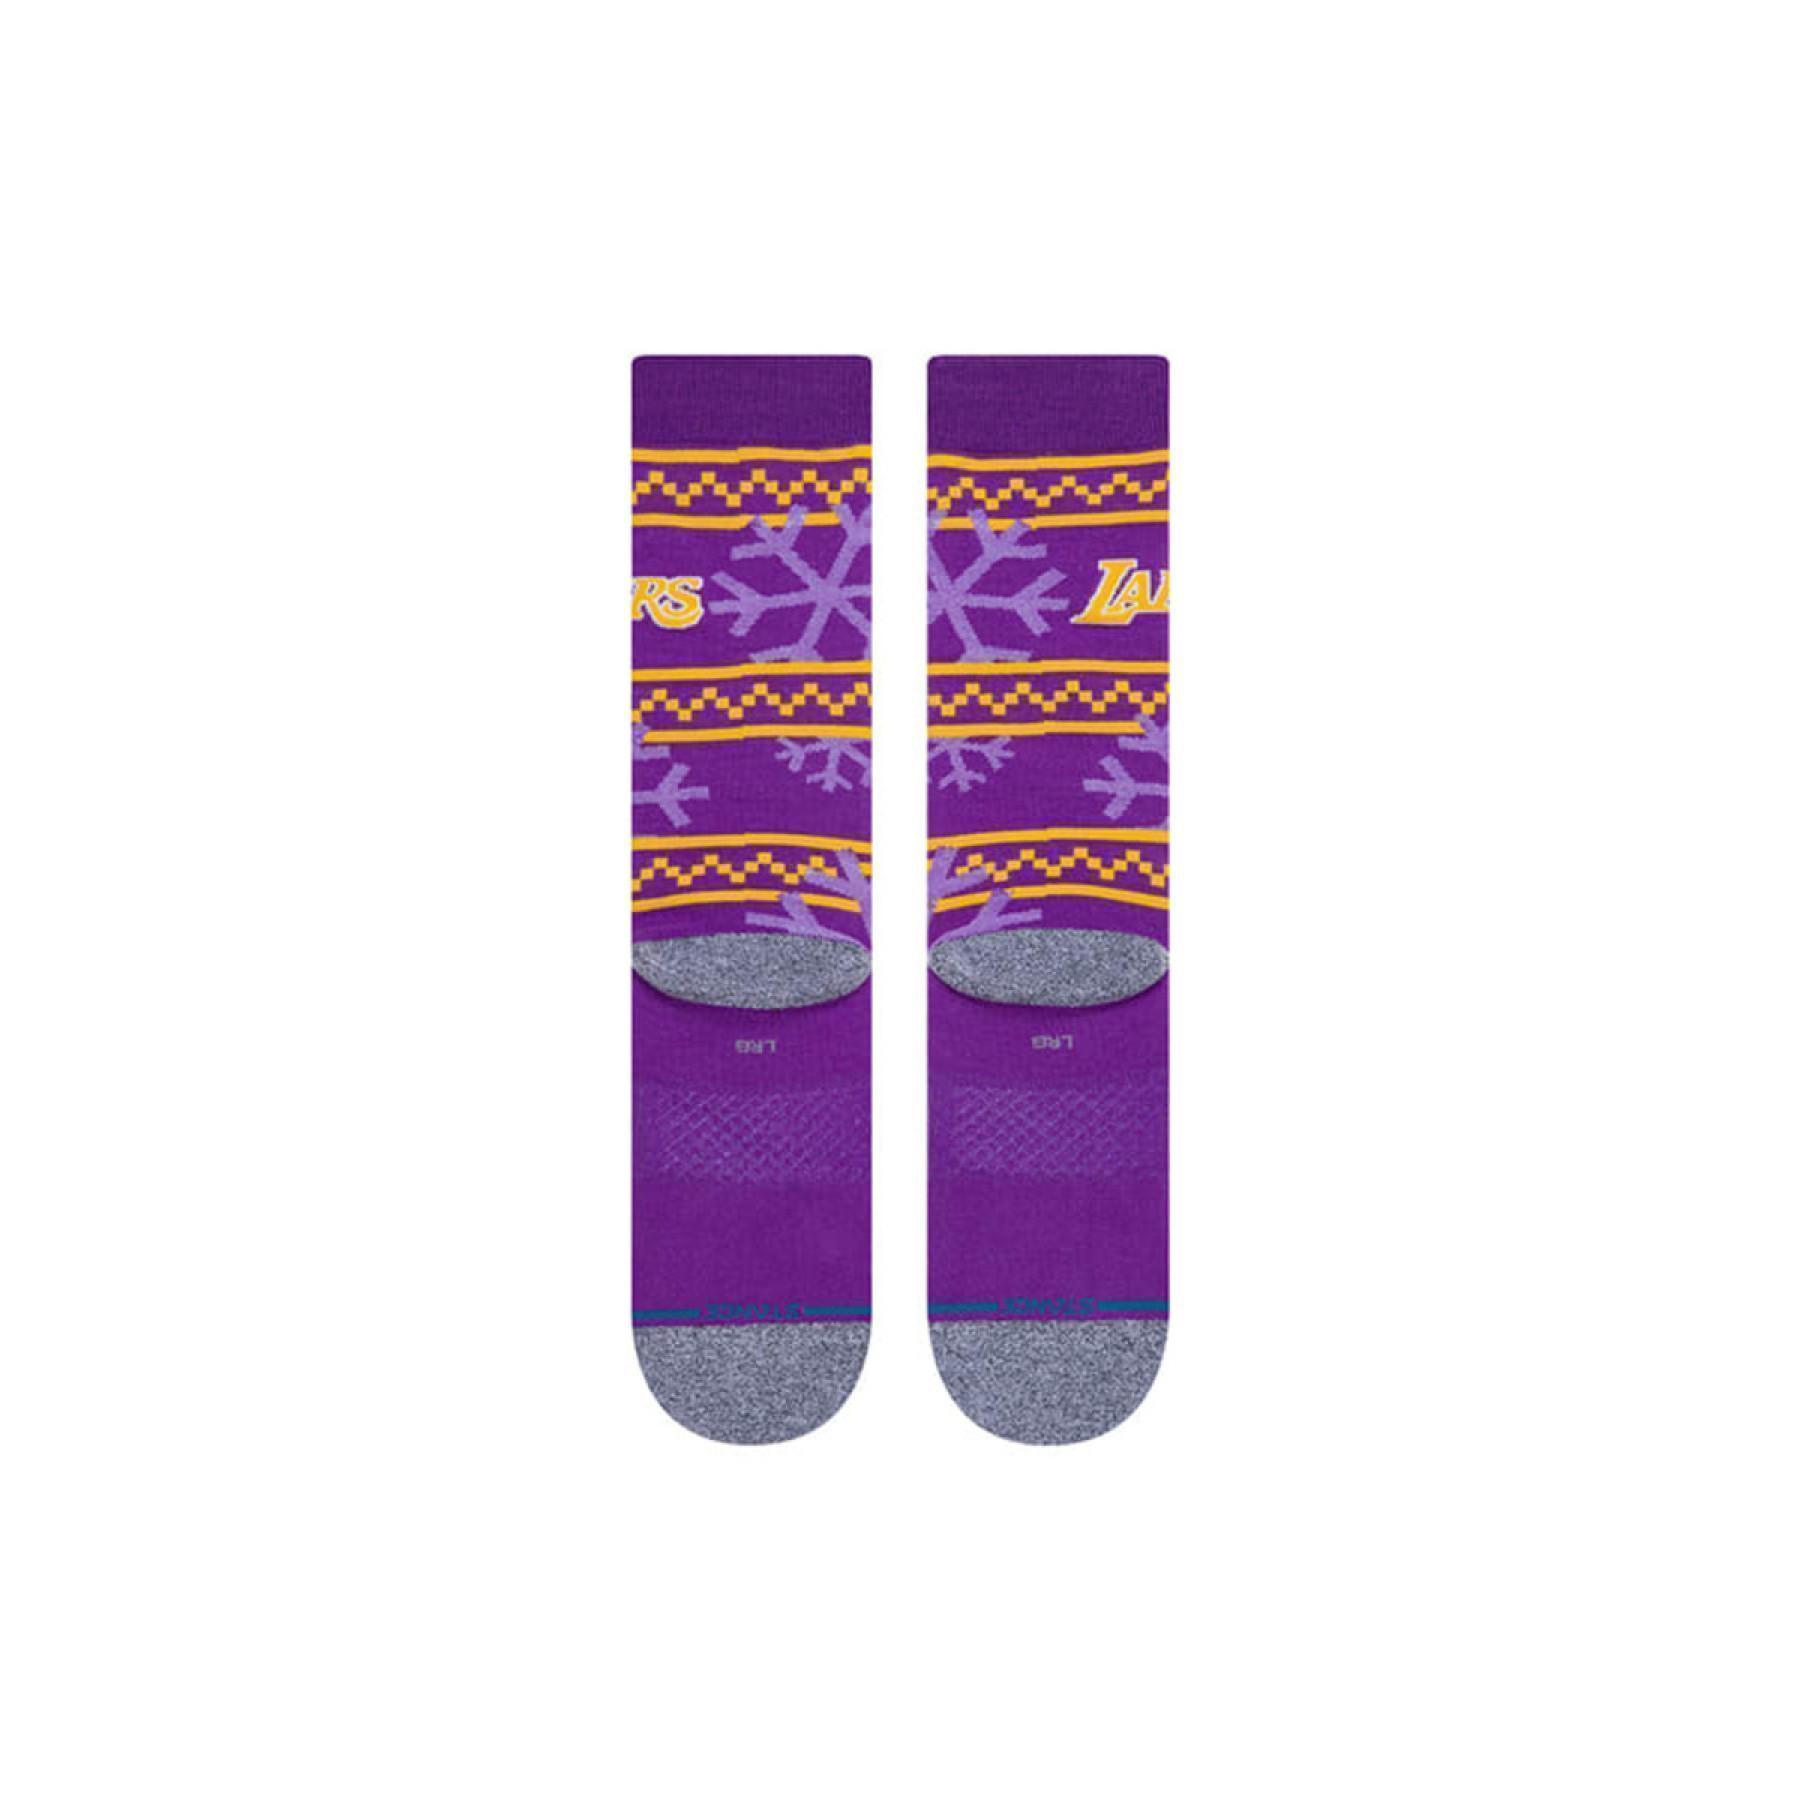 Socken Los Angeles Lakers